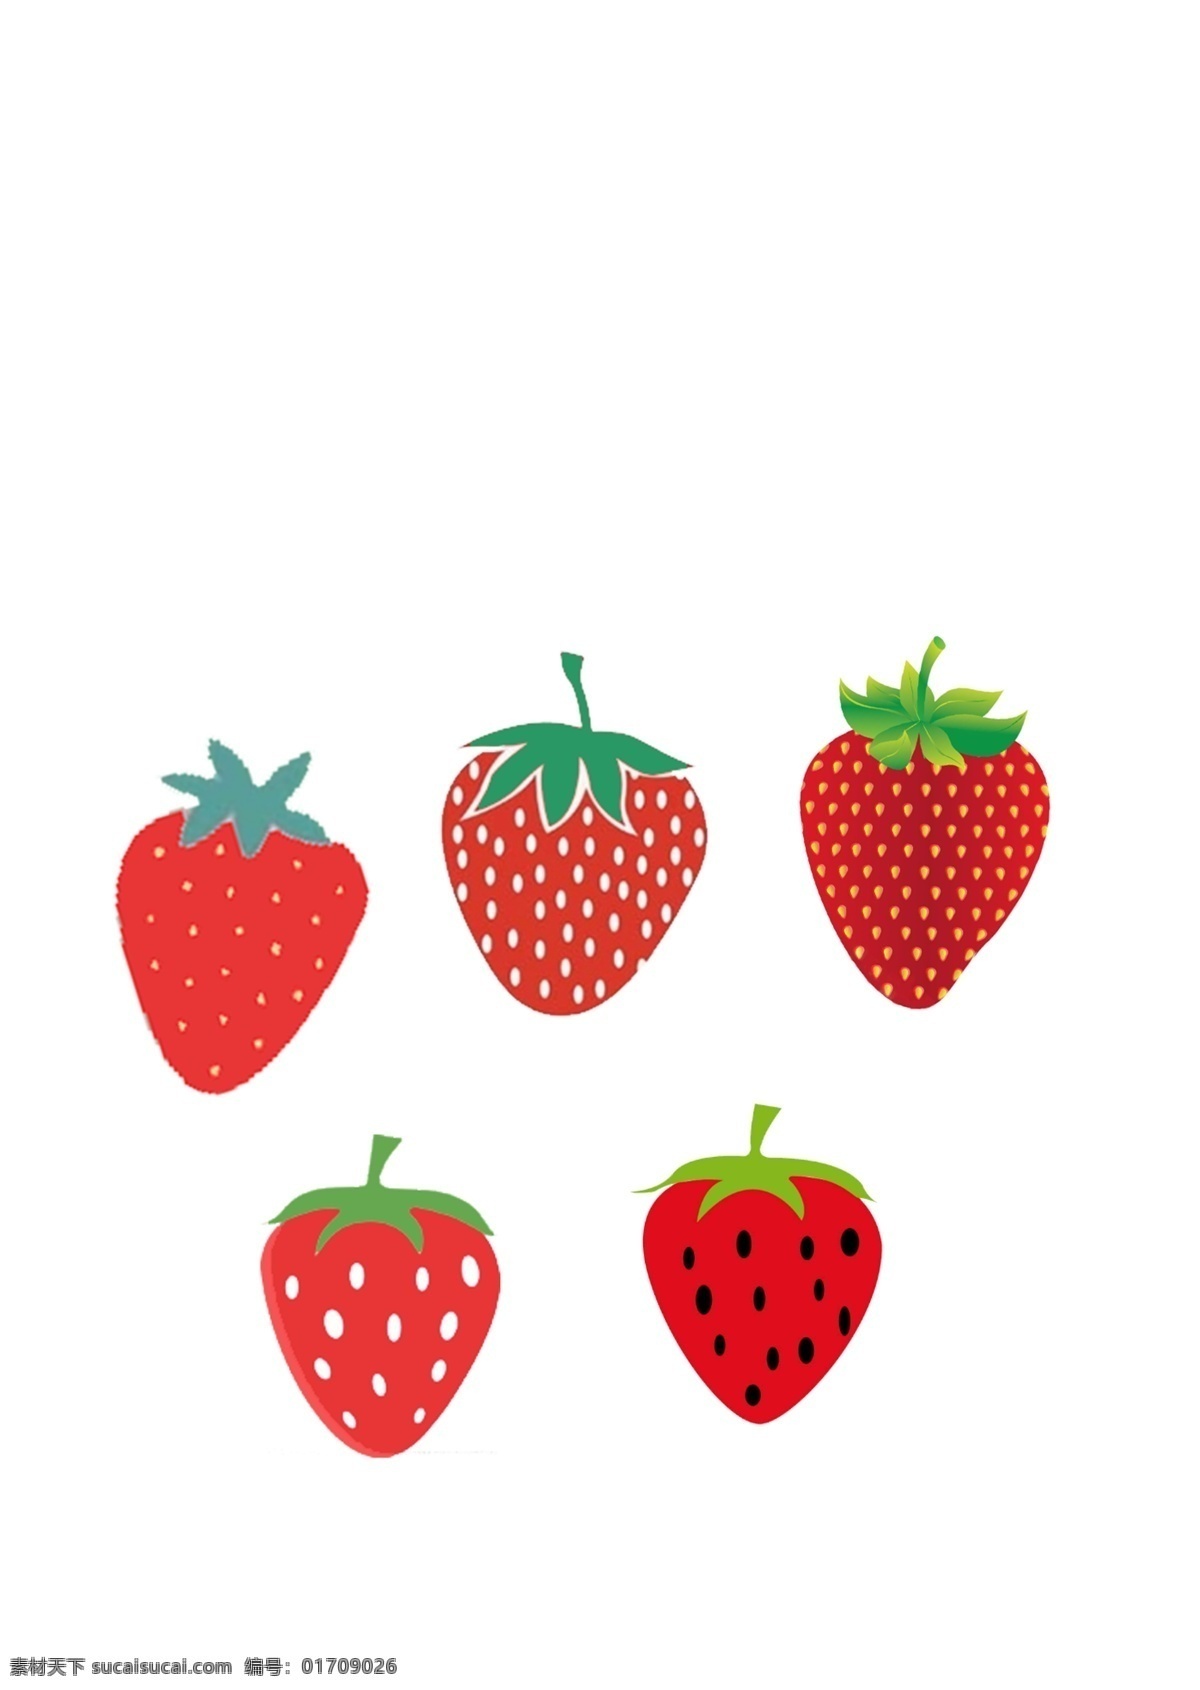 草莓图片 草莓 白点草莓 粉色 绿色 多种草莓